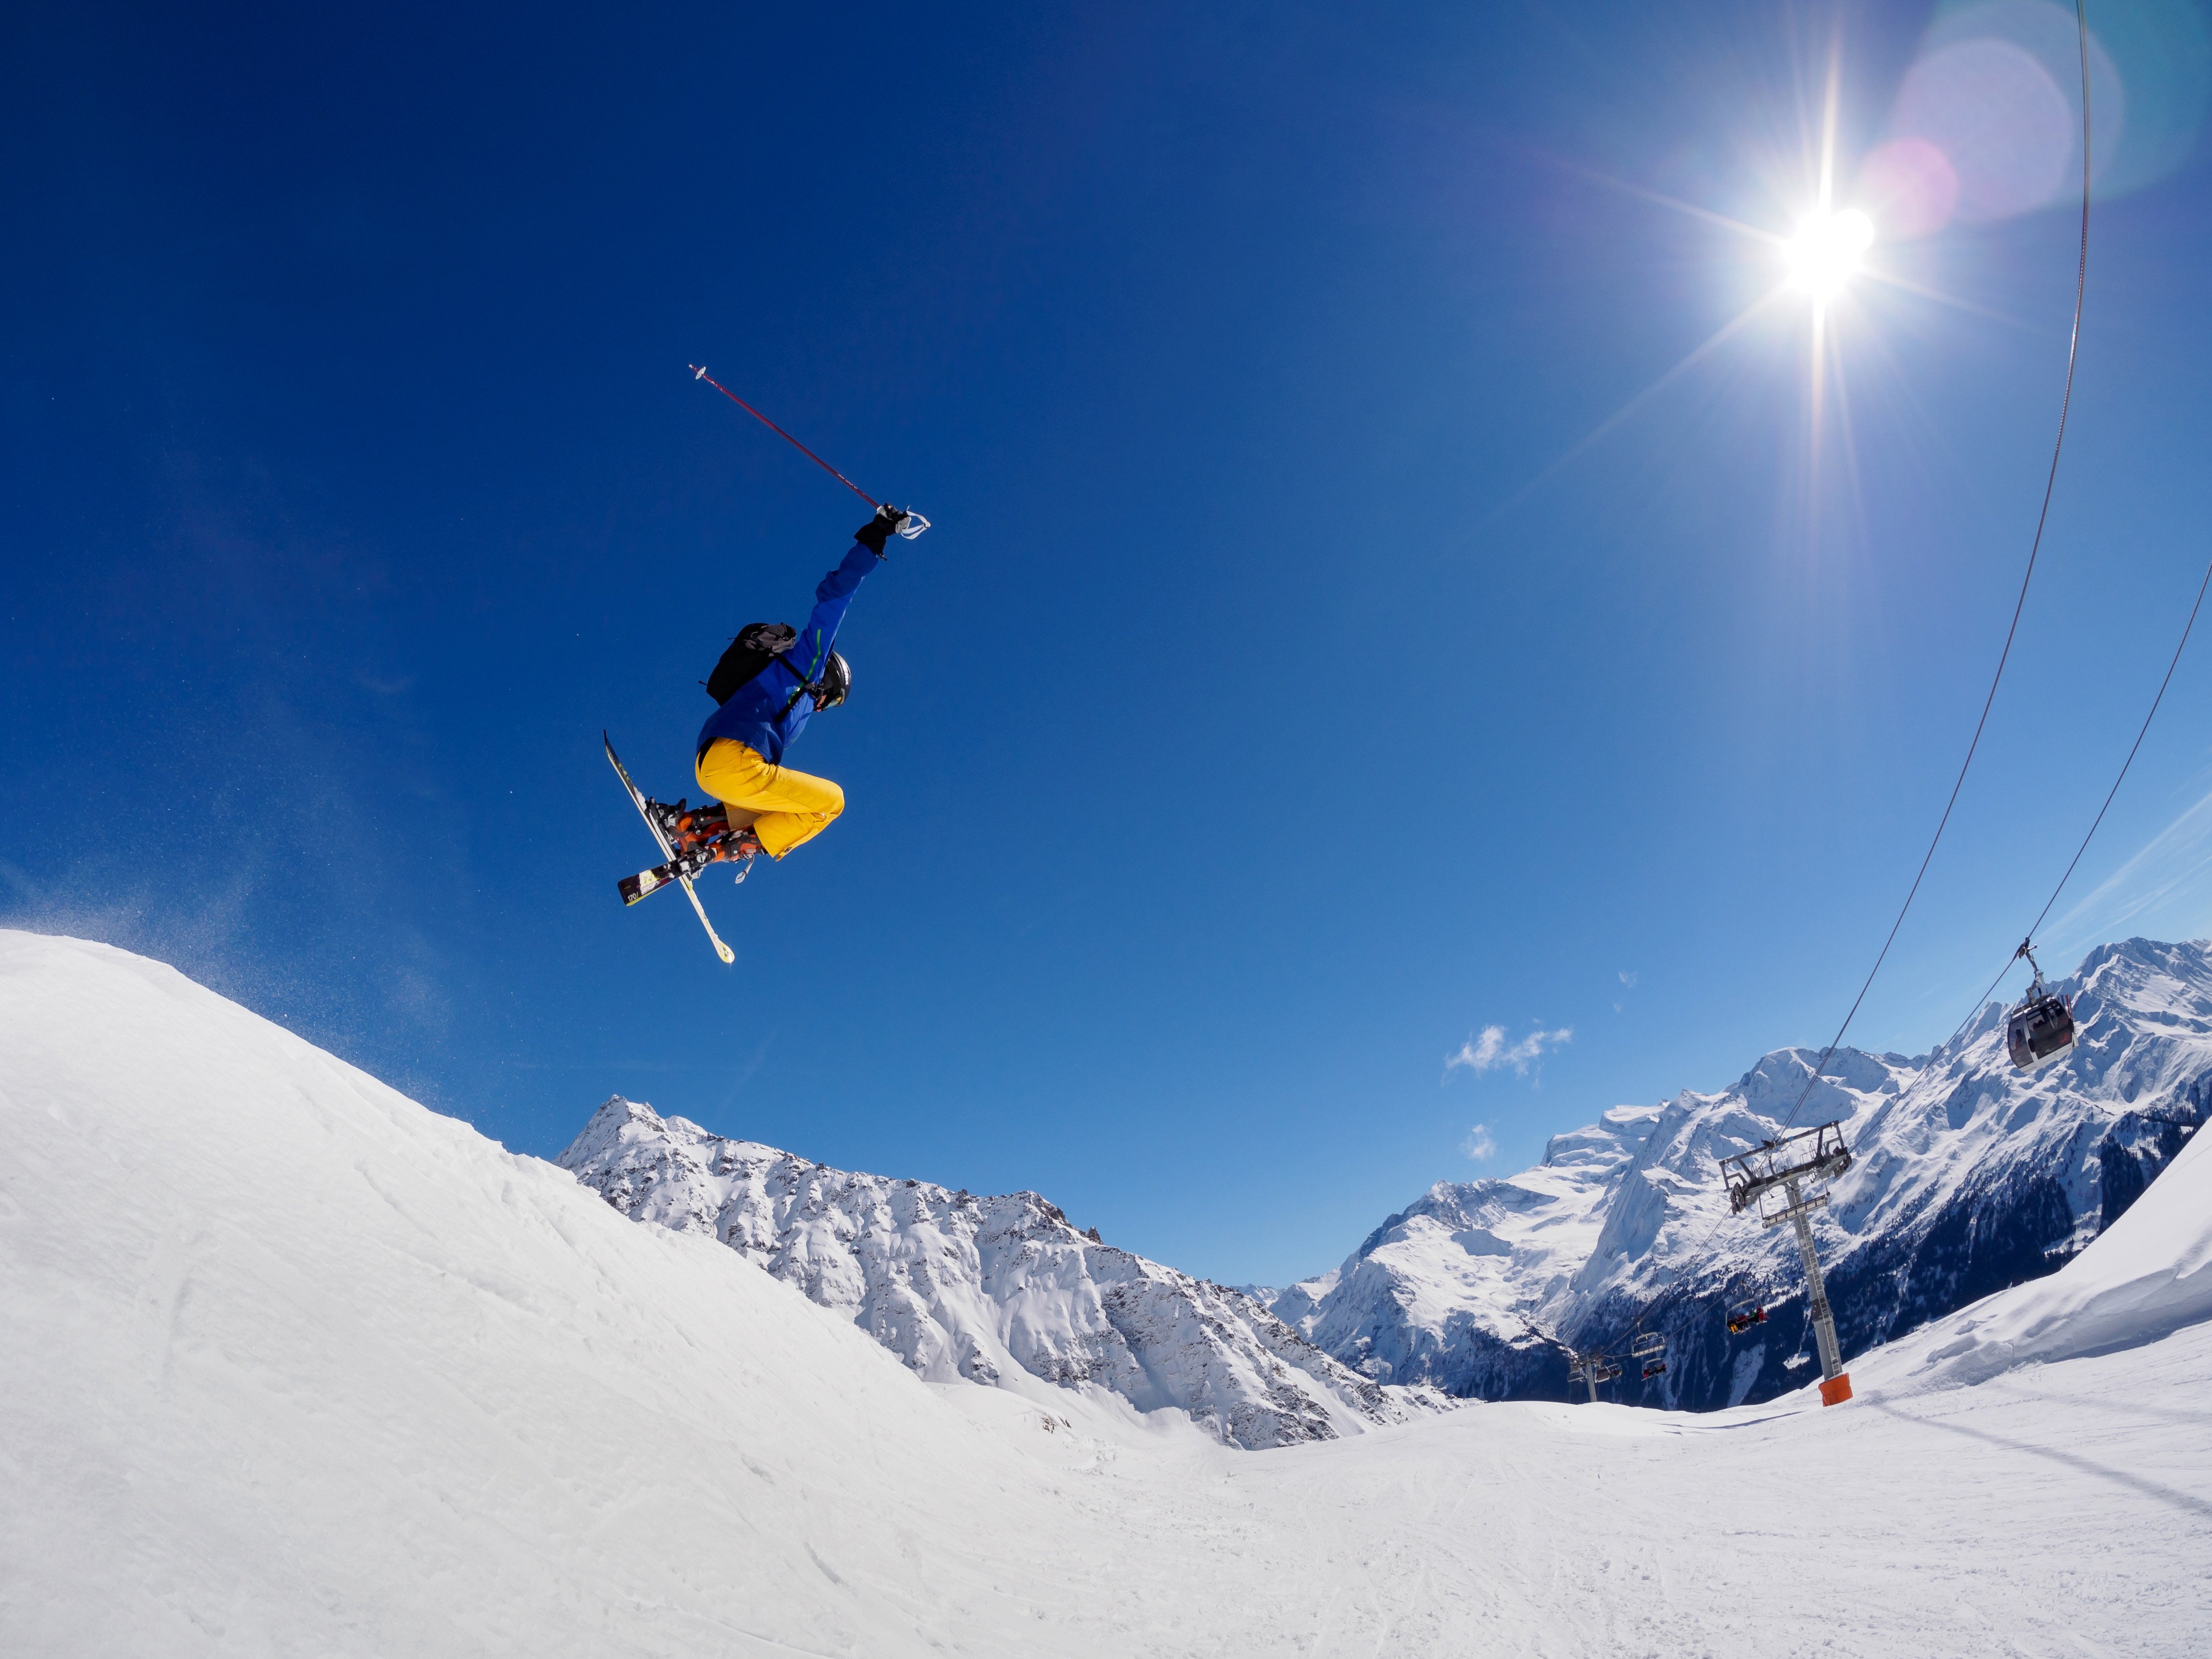 Skiing in Verbier, Switzerland. Photo: Shutterstock